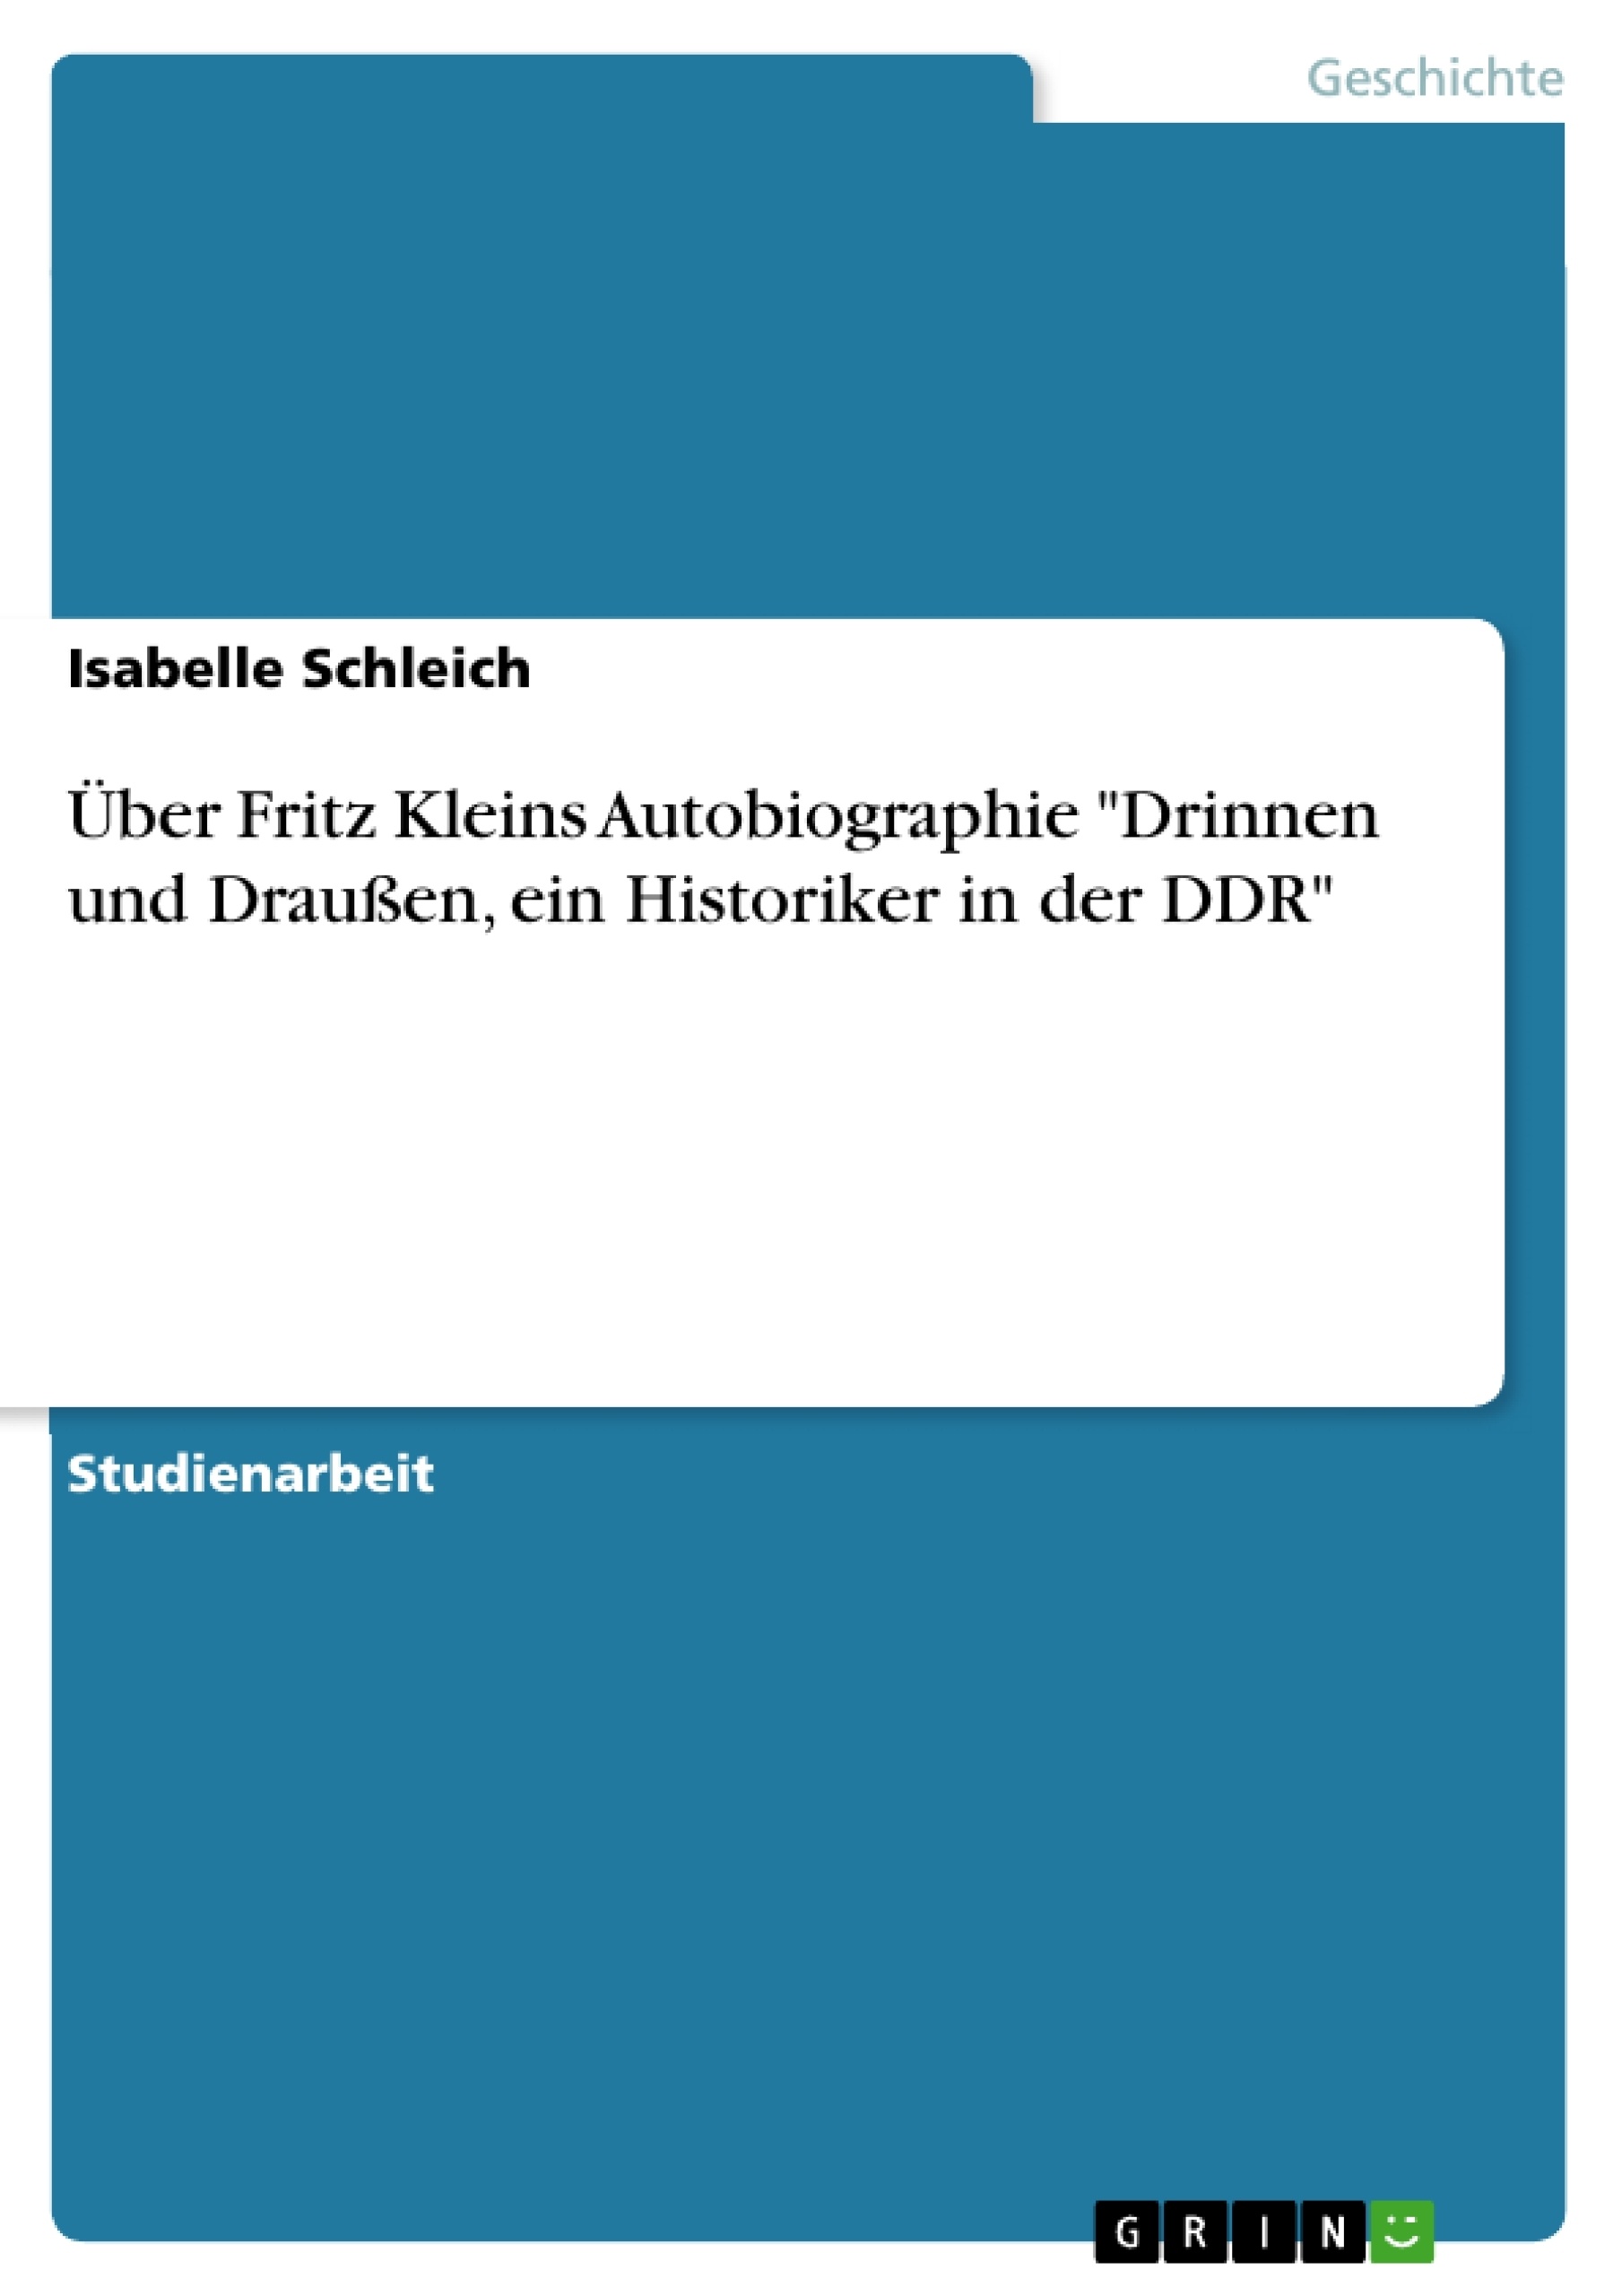 Título: Über Fritz Kleins Autobiographie "Drinnen und Draußen, ein Historiker in der DDR"